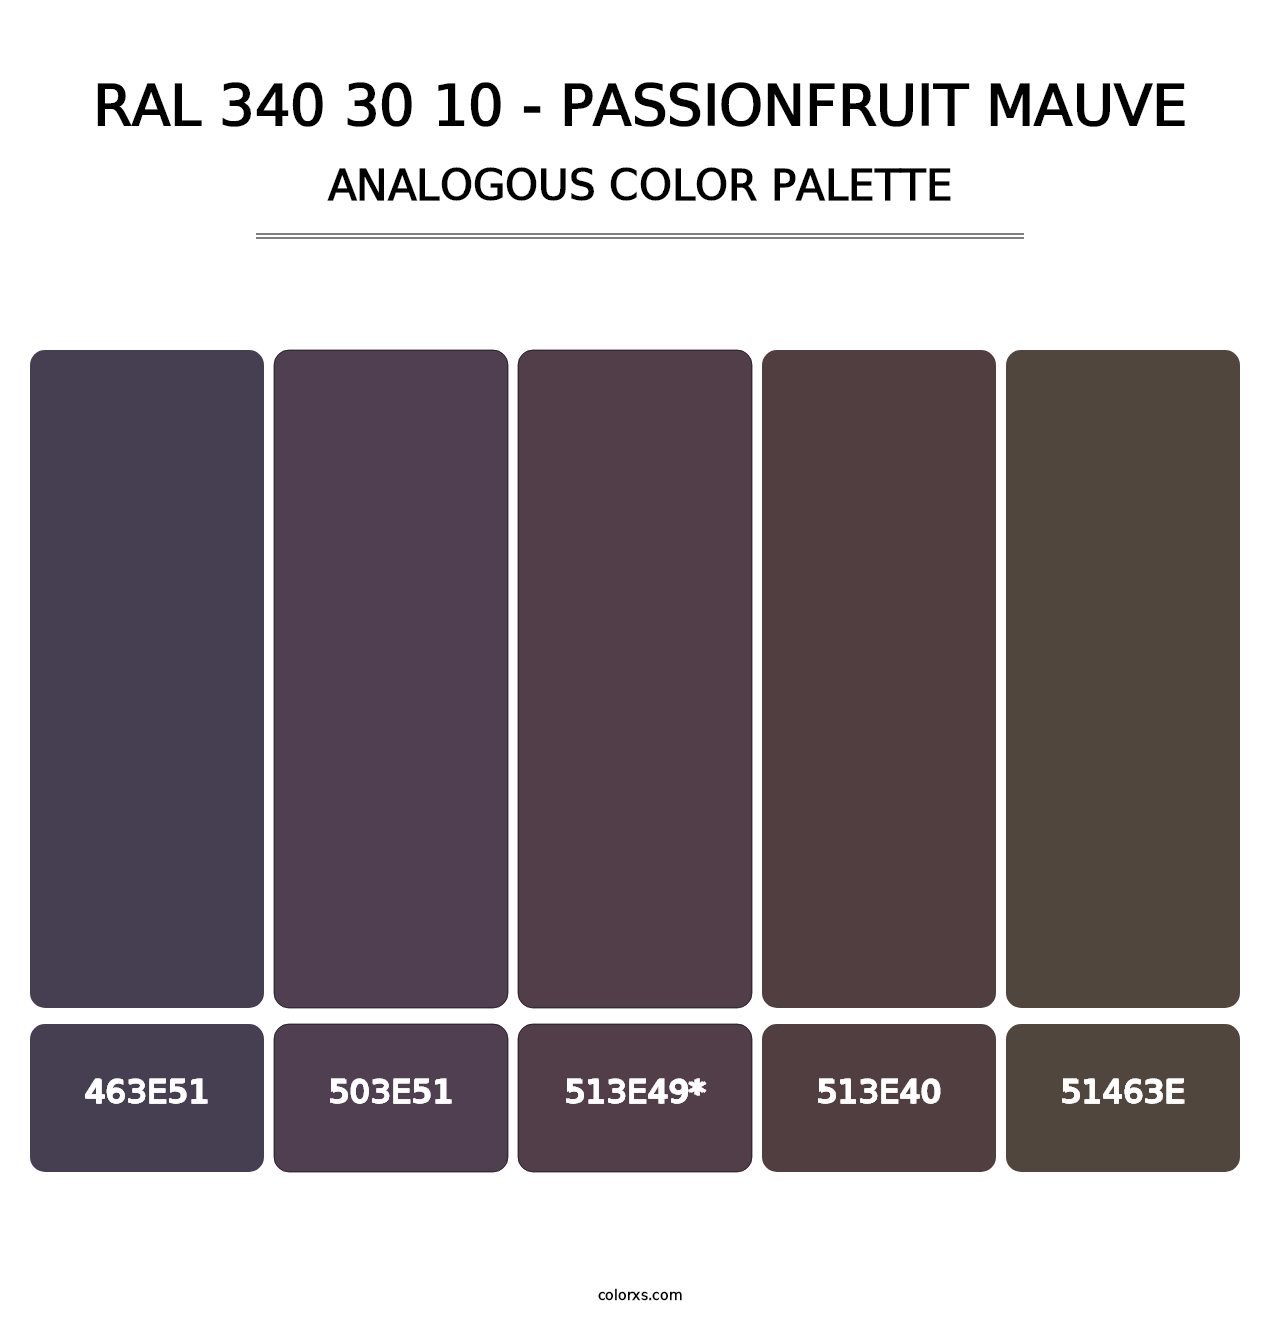 RAL 340 30 10 - Passionfruit Mauve - Analogous Color Palette